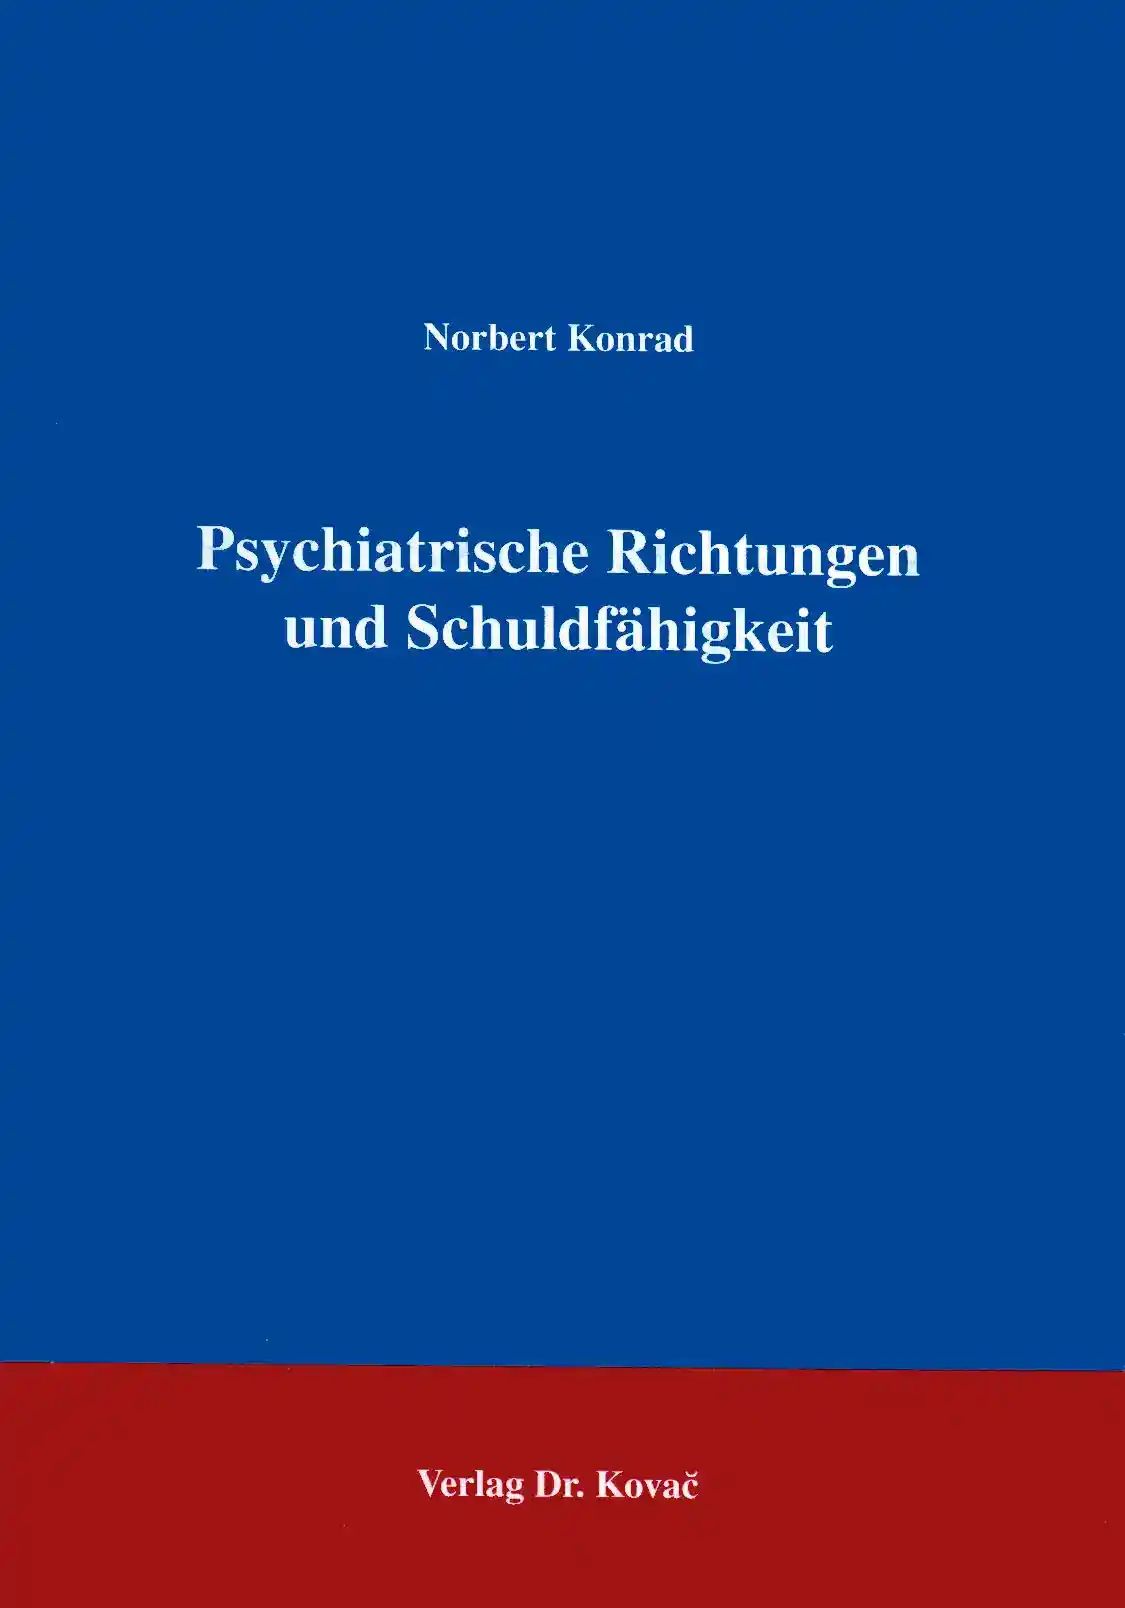 Psychiatrische Richtungen und Schuldfähigkeit (Forschungsarbeit)